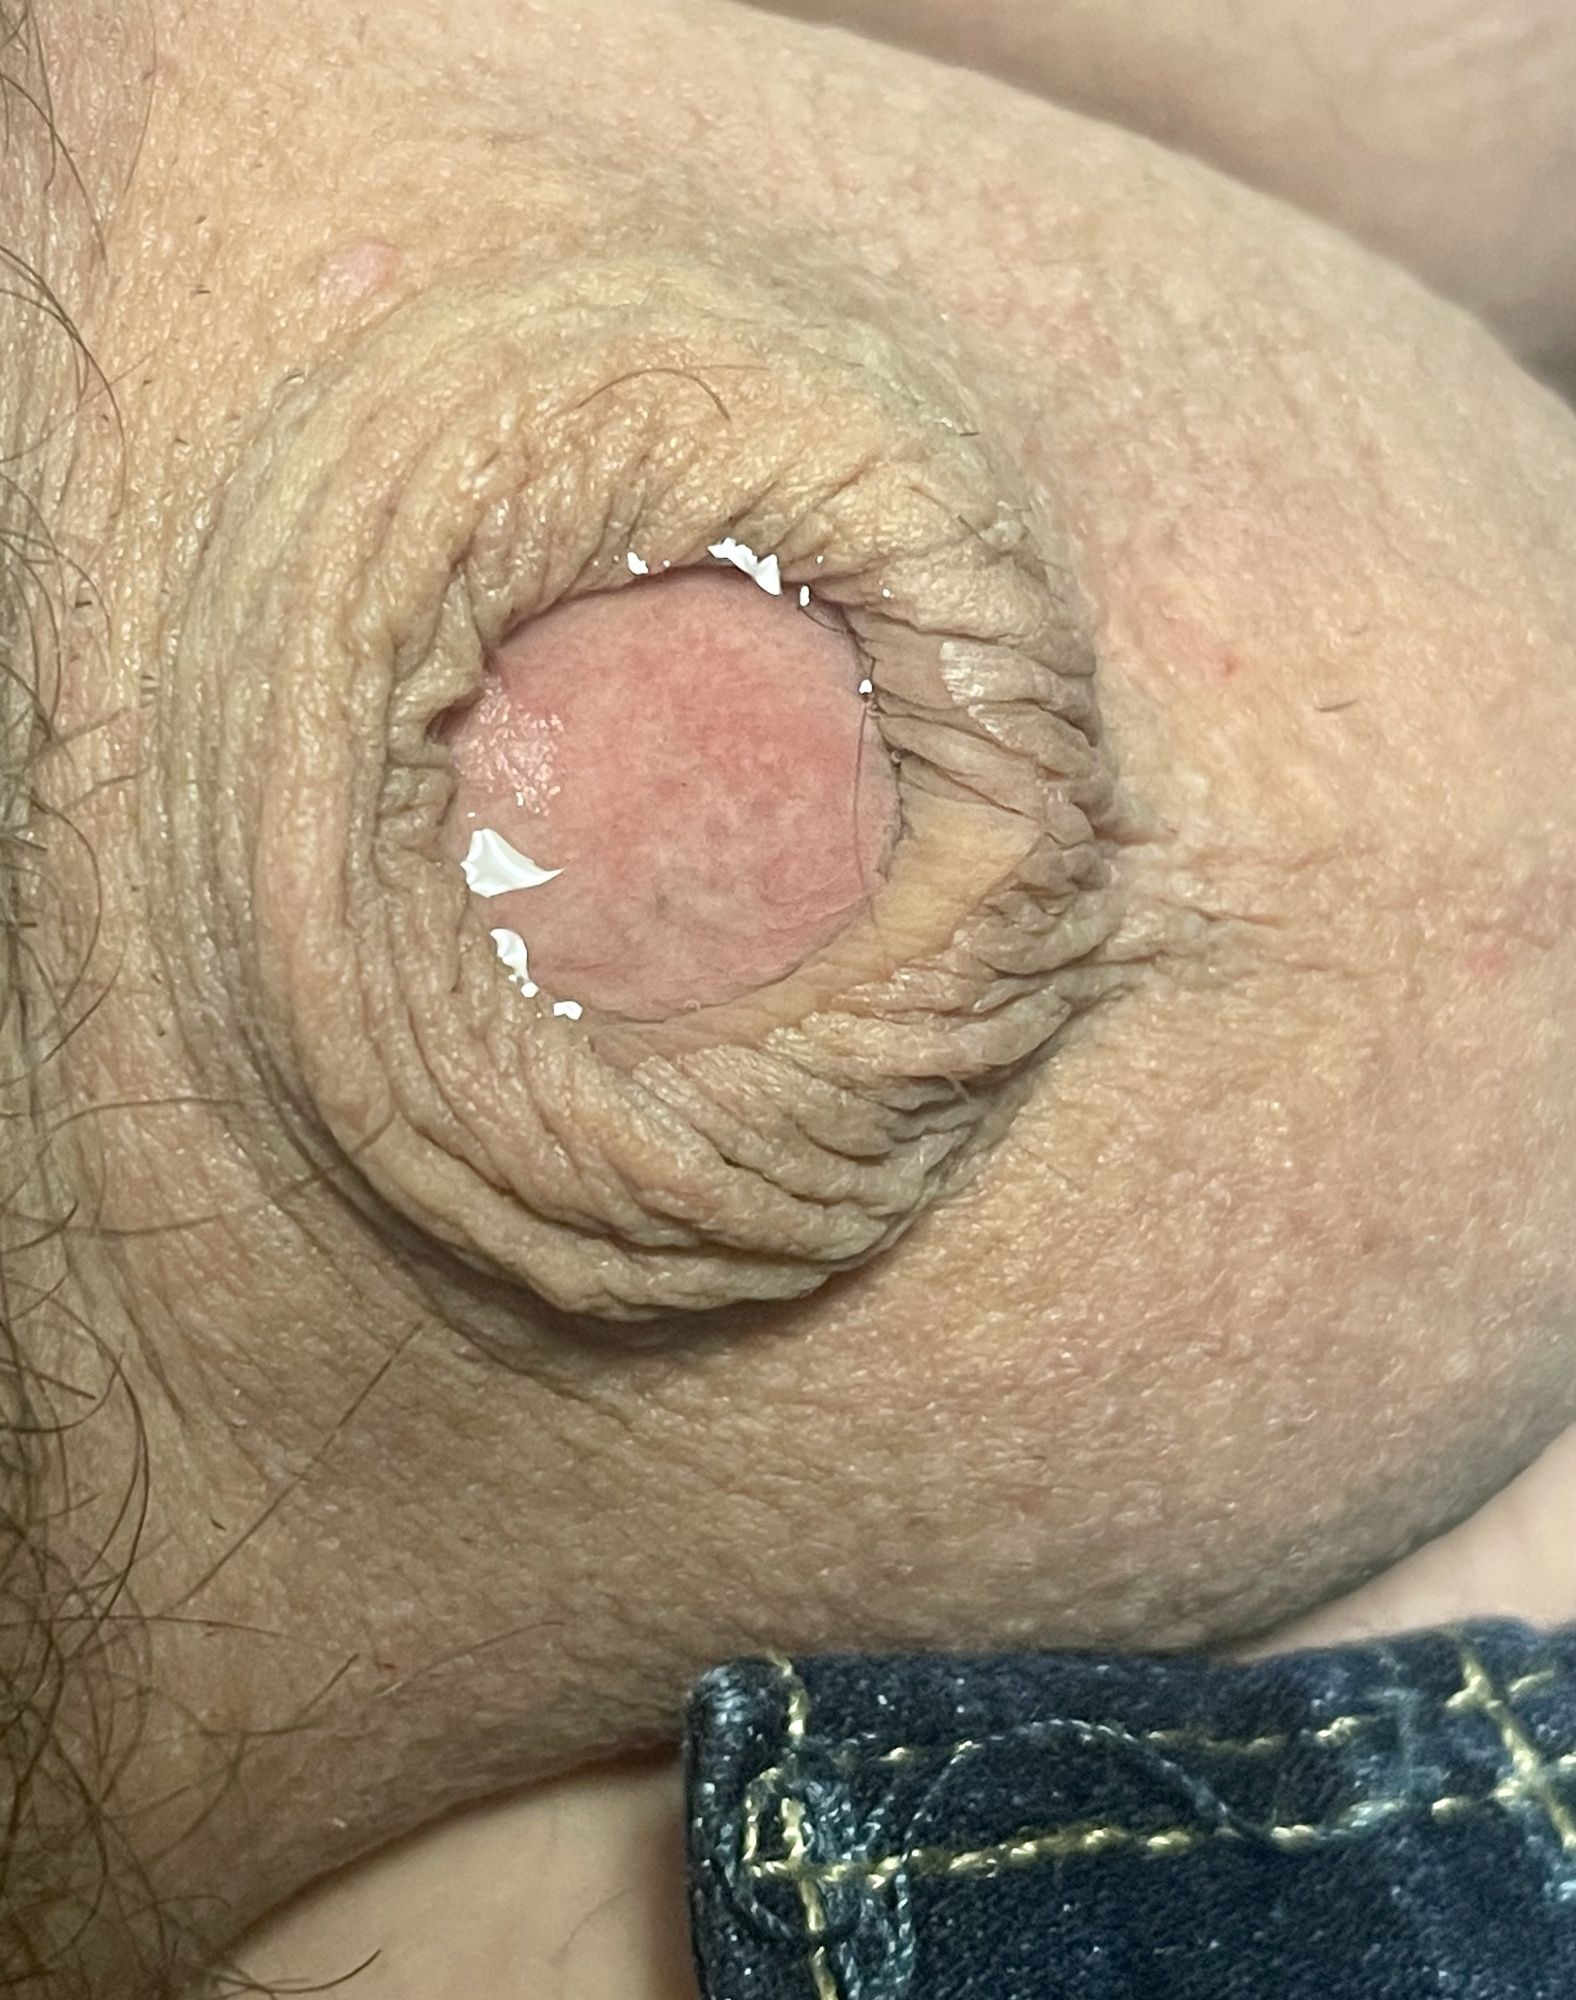 Inverted micro penis tiny dick pre cum